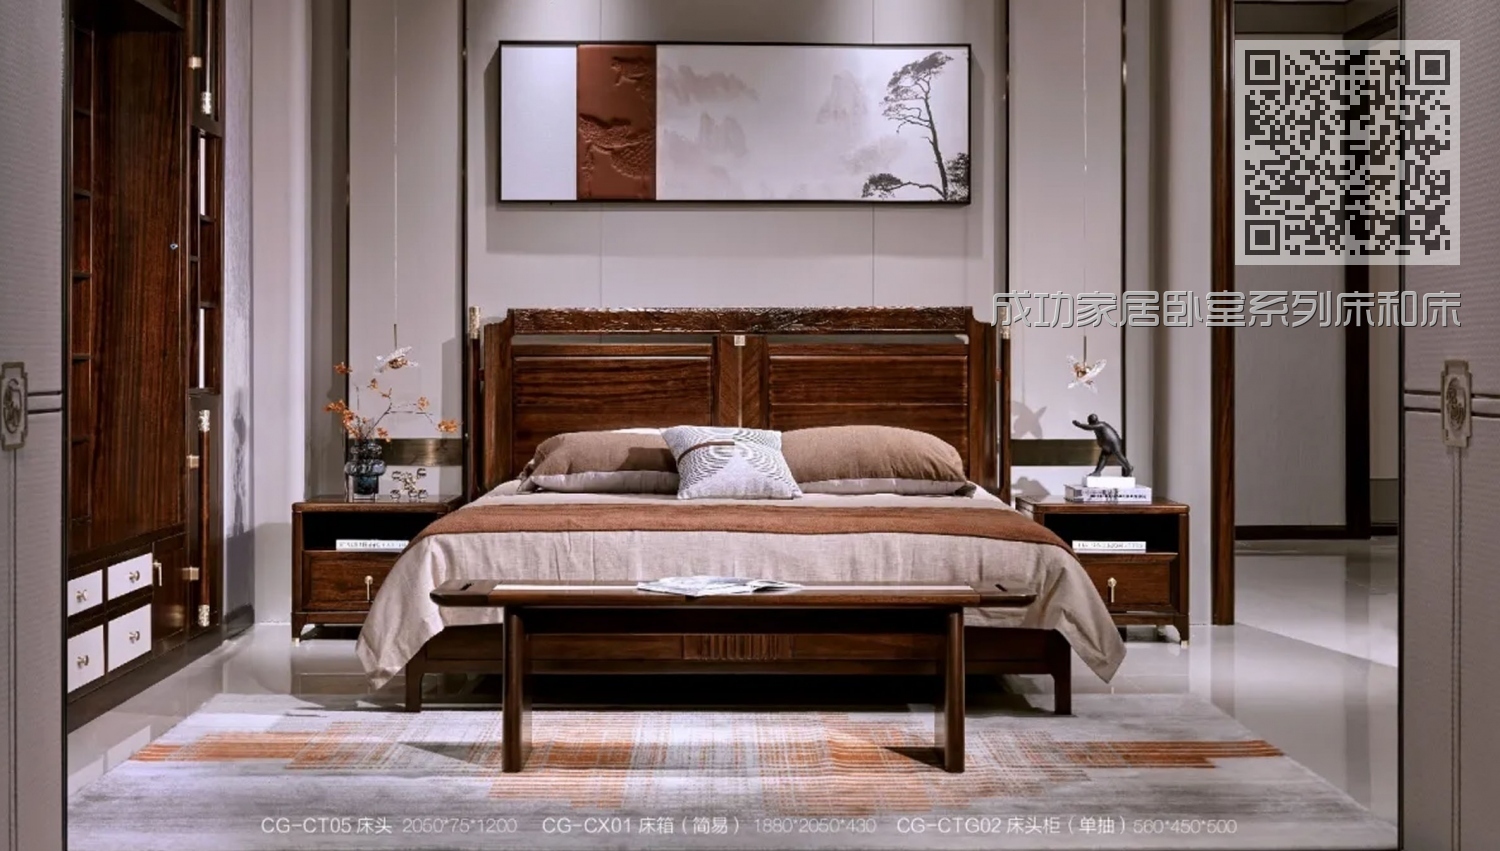 成功家居卧室系列床和床头柜床尾凳组合